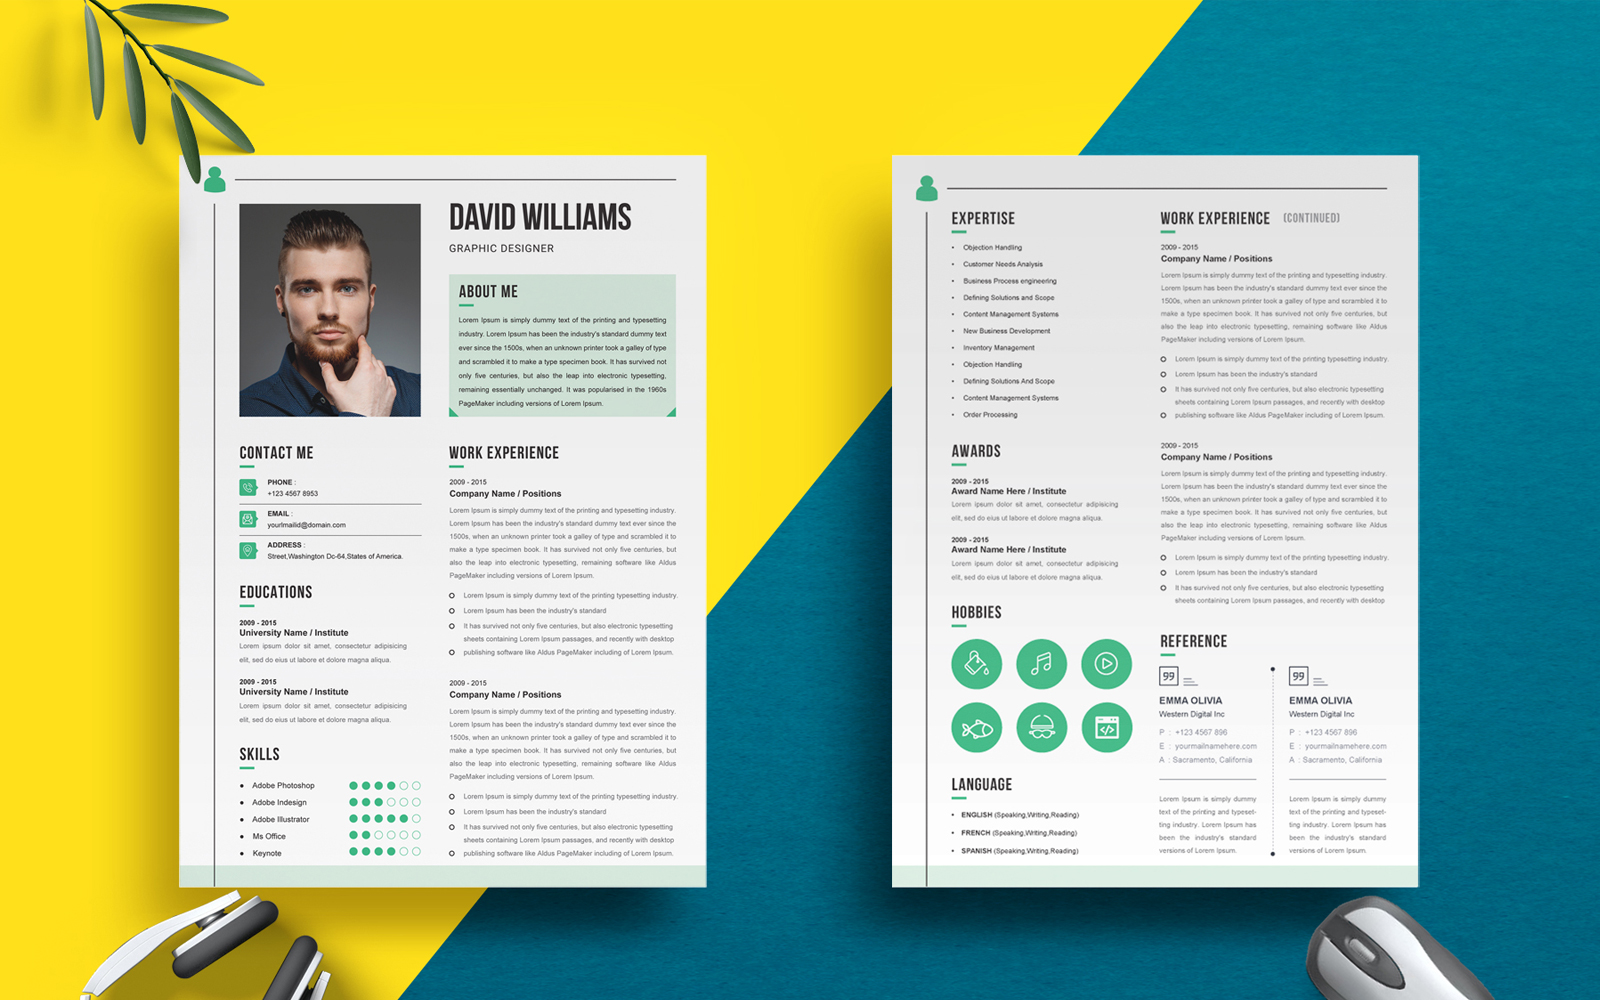 David Williams - Graphic Designer Resume